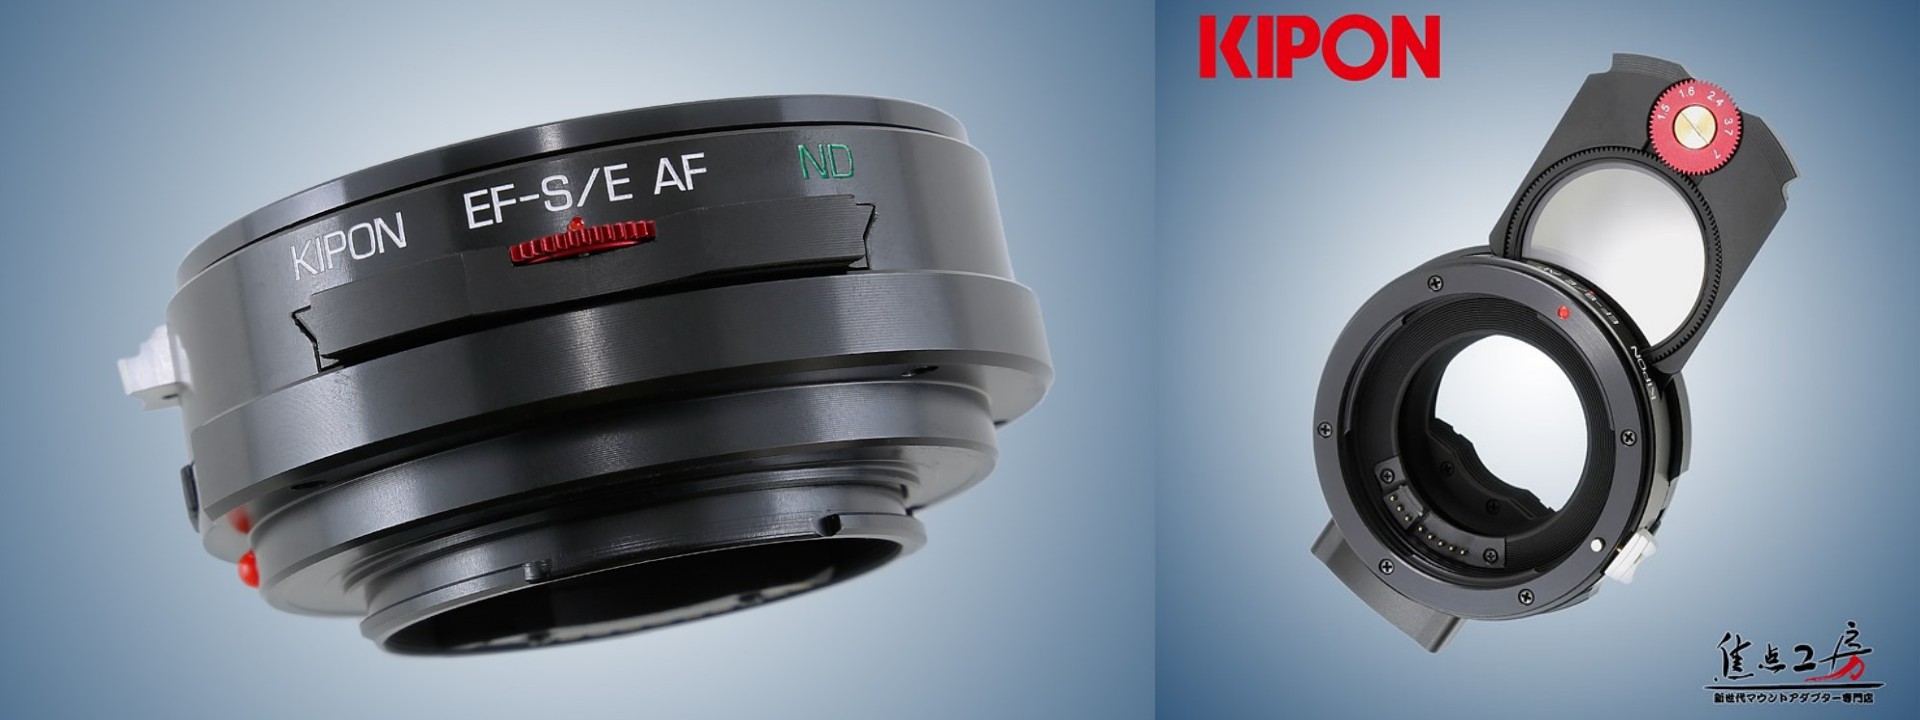 Kipon giới thiệu ngàm chuyển tích hợp filter ND, hỗ trợ gắn ống kính Canon EF-S lên thân máy Sony FE